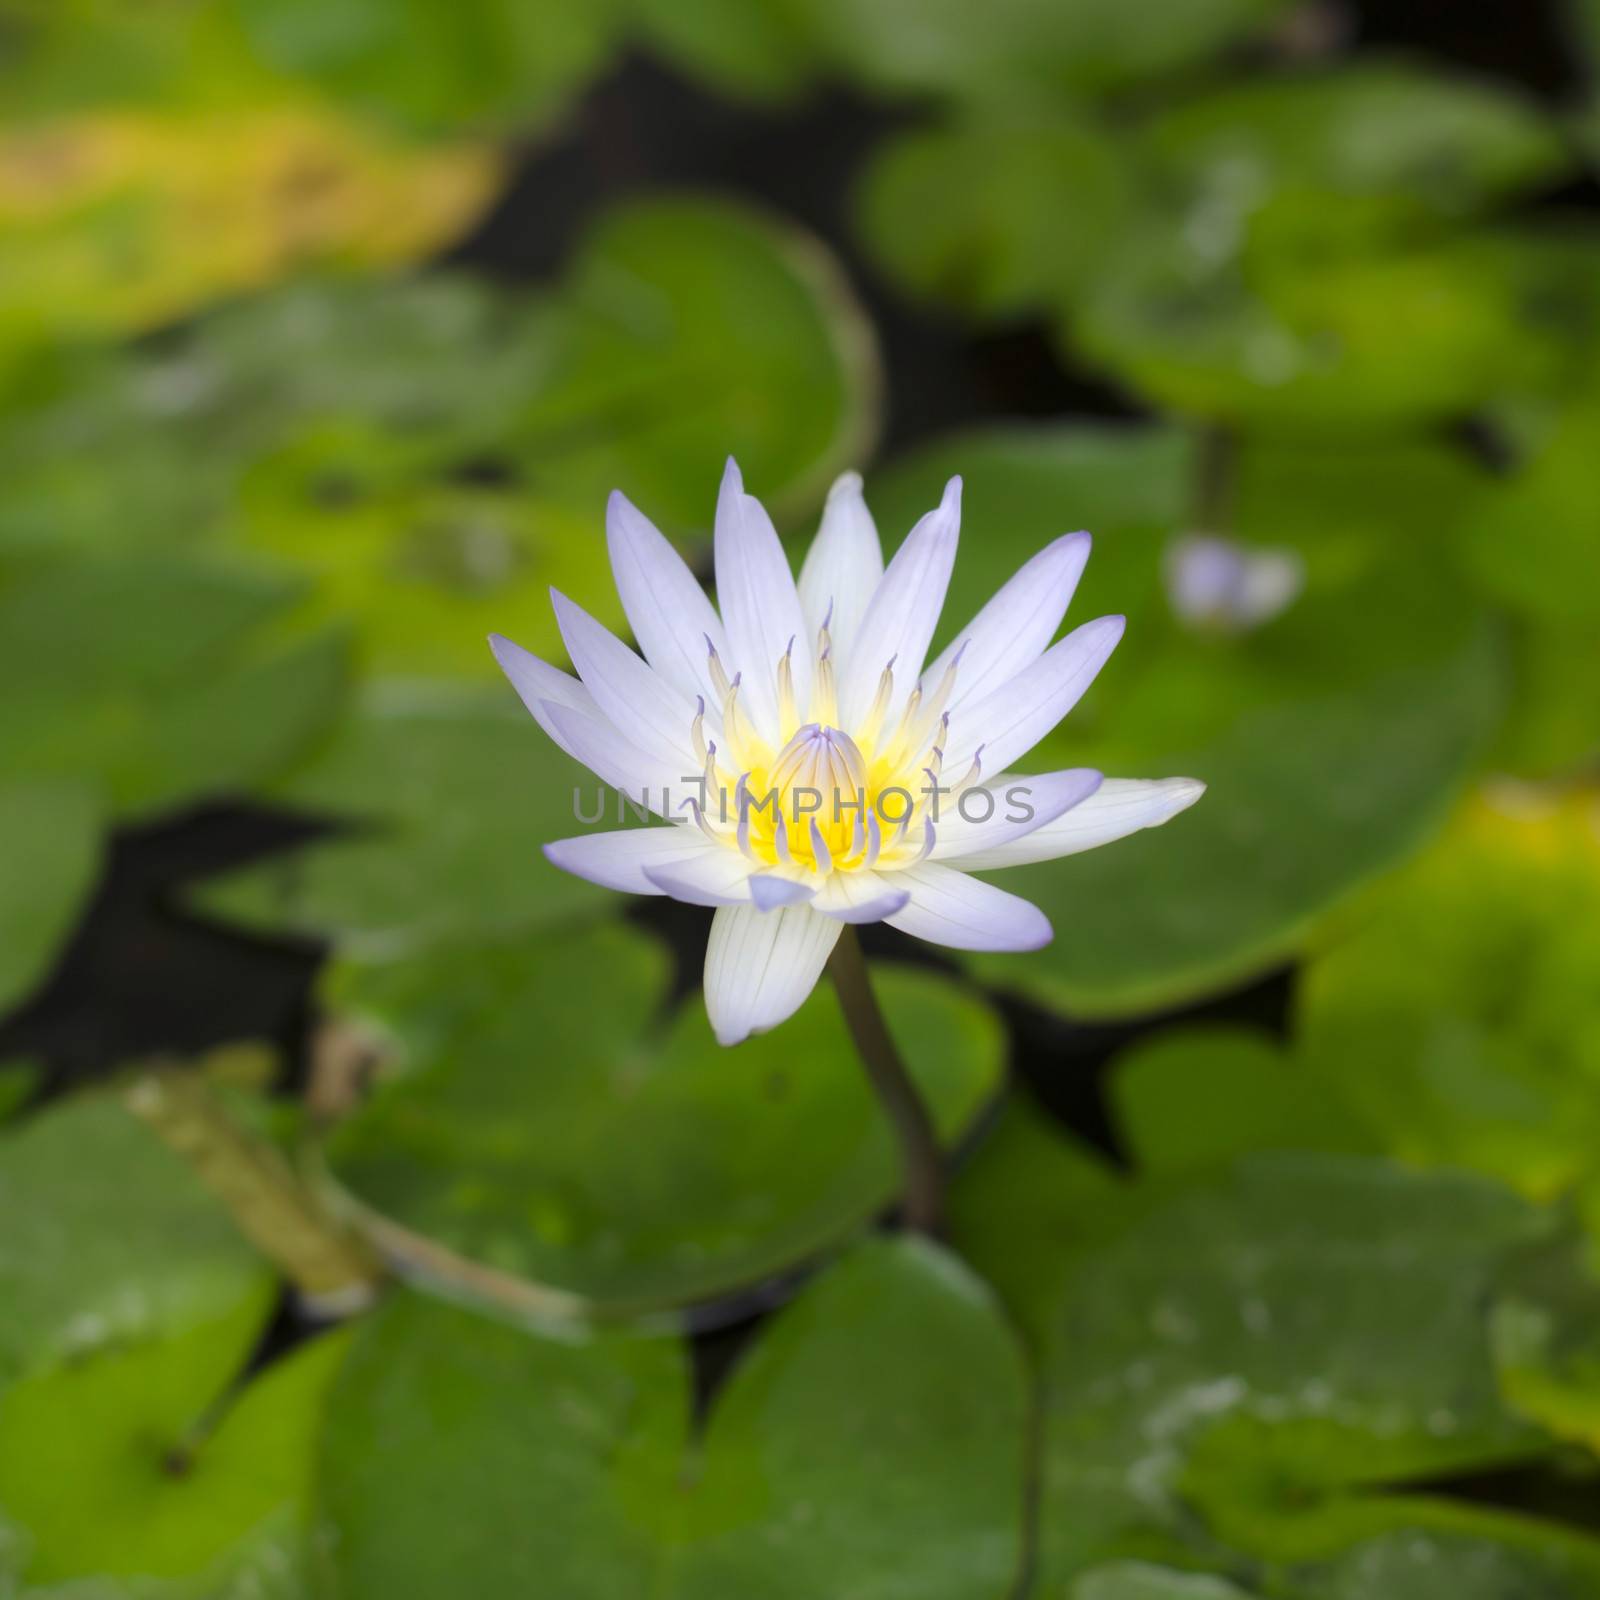 beautiful lotus on water by ammza12